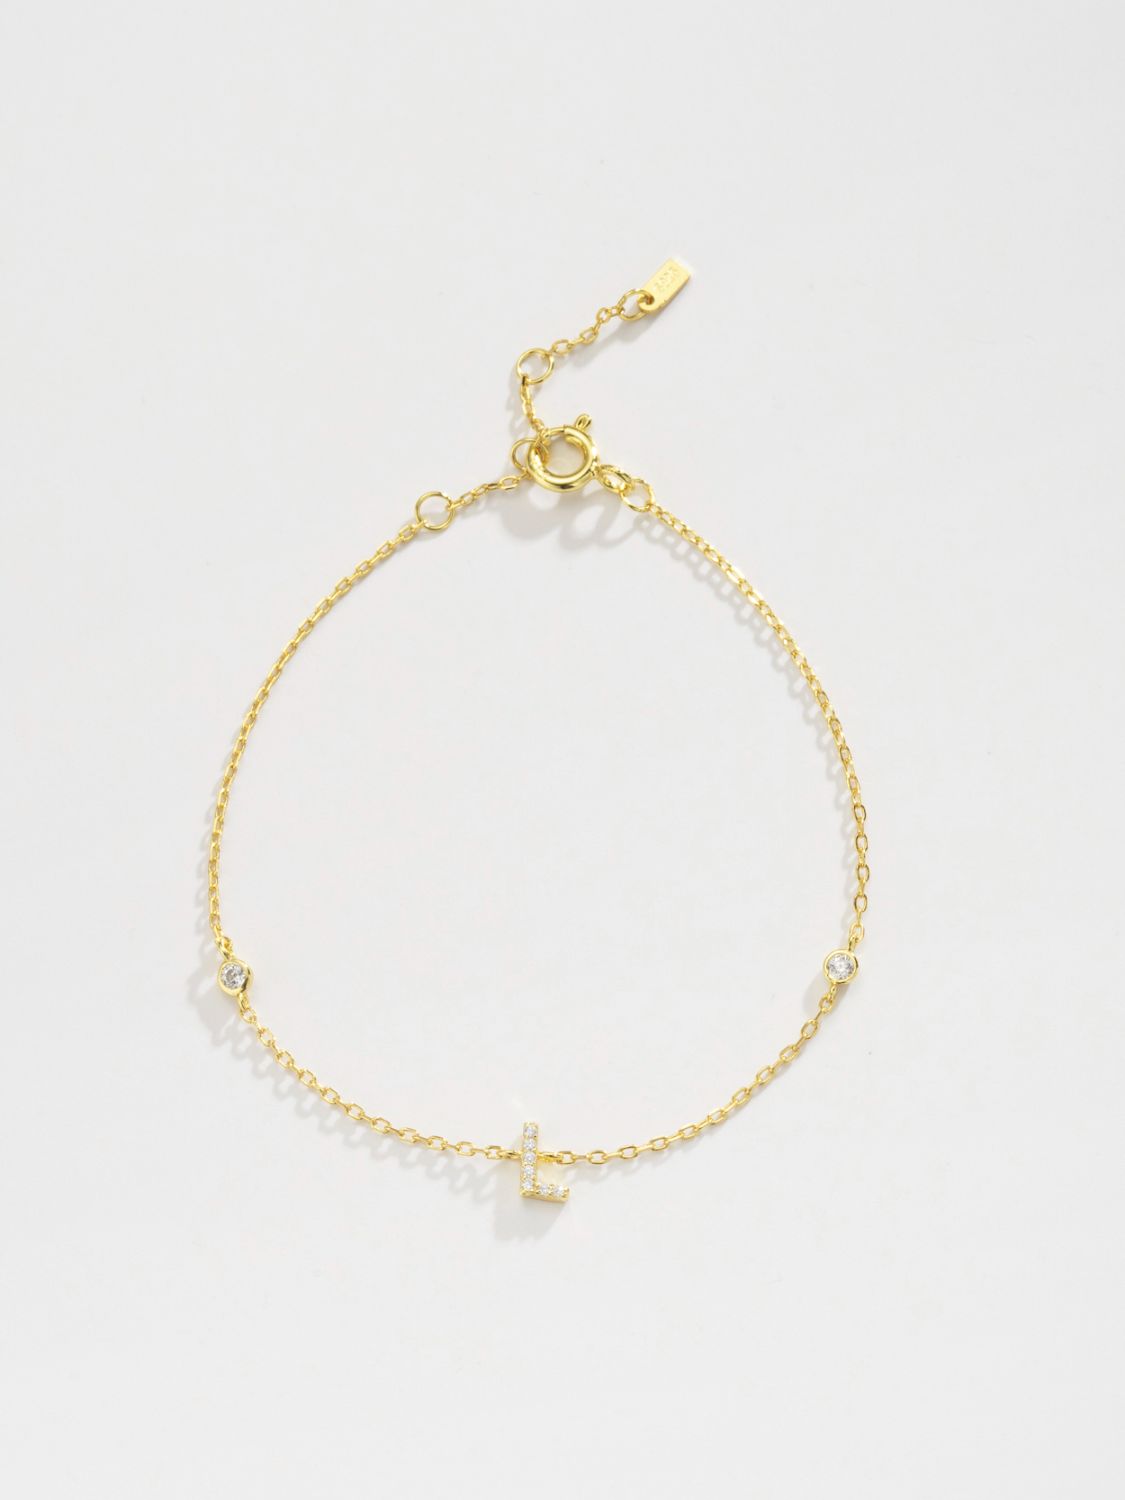 L To P Zircon 925 Sterling Silver Bracelet - Women’s Jewelry - Bracelets - 2 - 2024